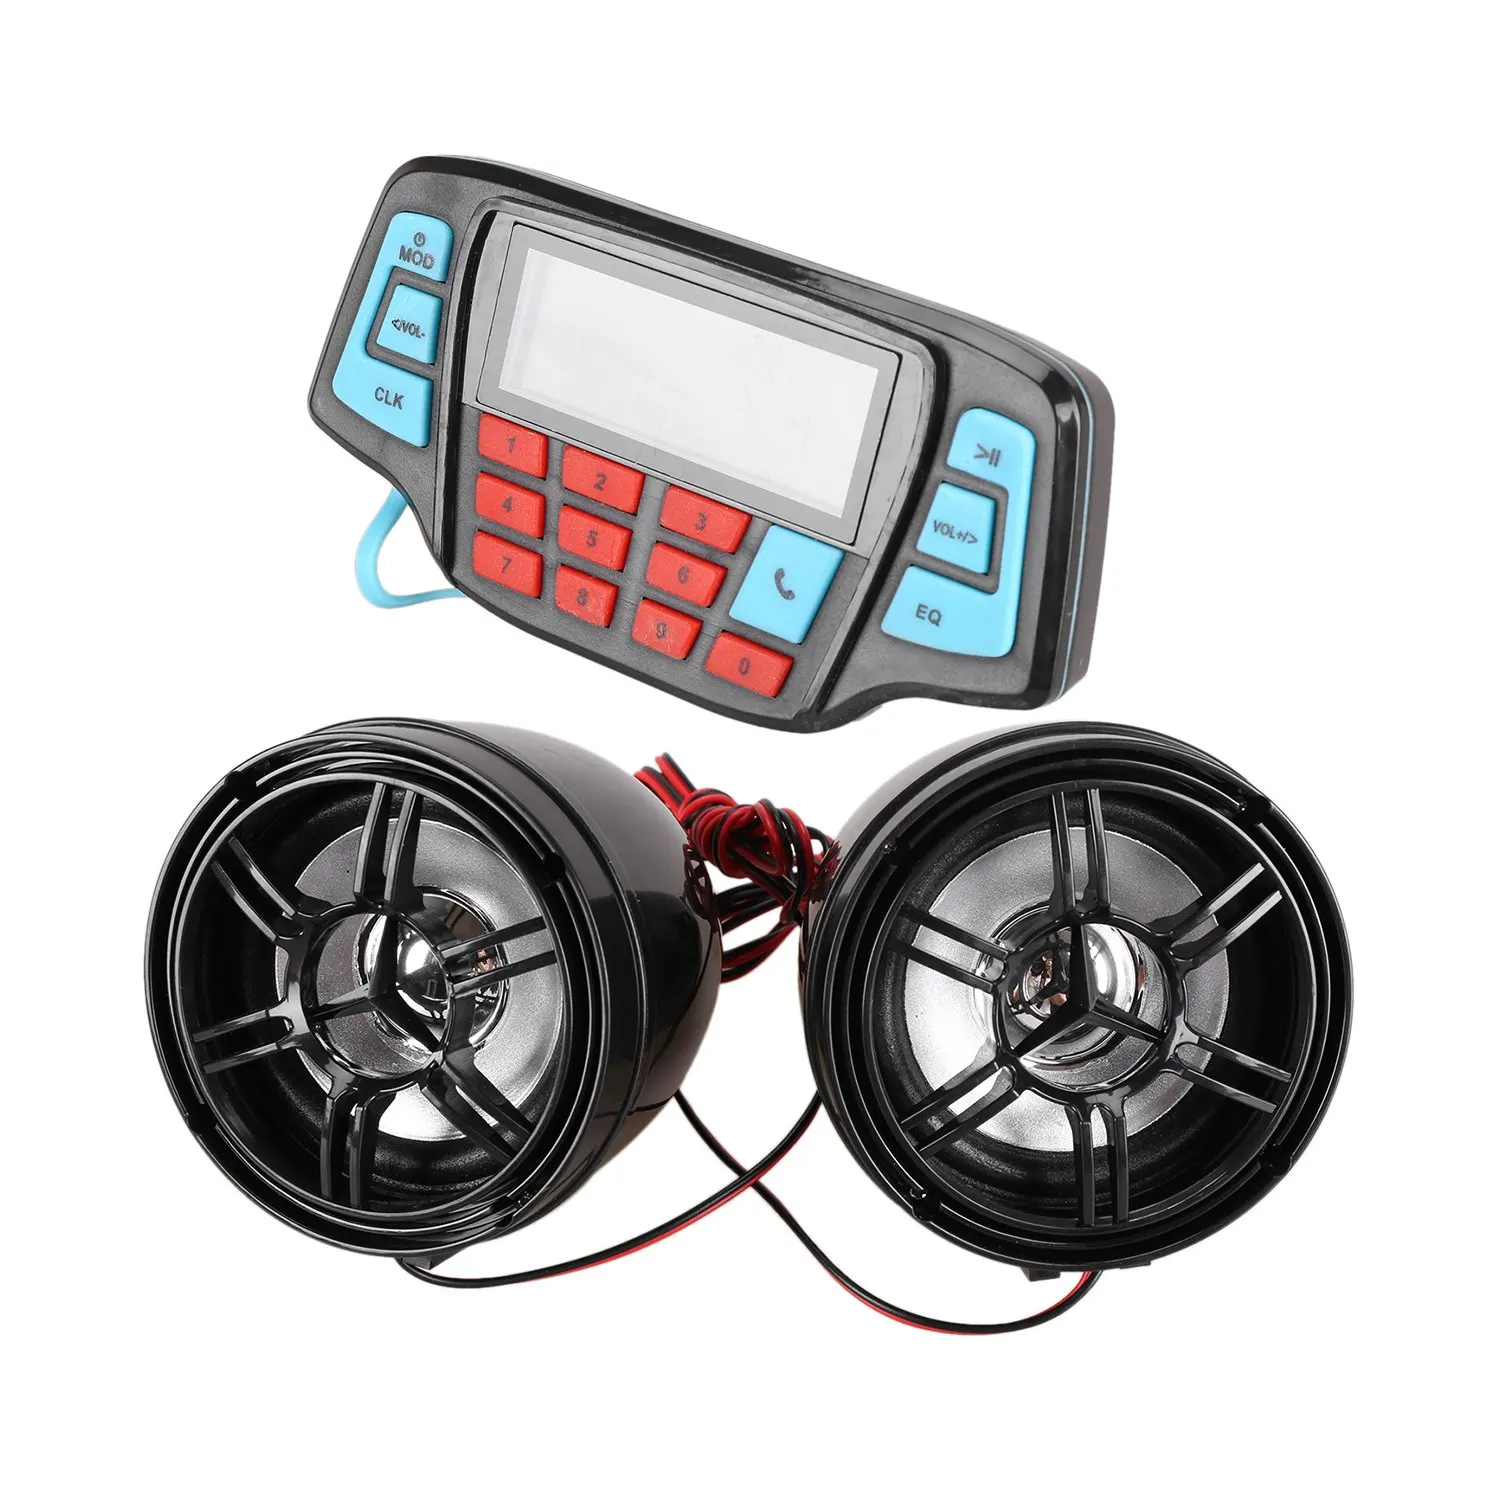 

Музыкальный MP3-плеер для мотоцикла, аудио, громкая связь, Bluetooth, стереоколонка, Fm-радио, водонепроницаемая аудиосистема